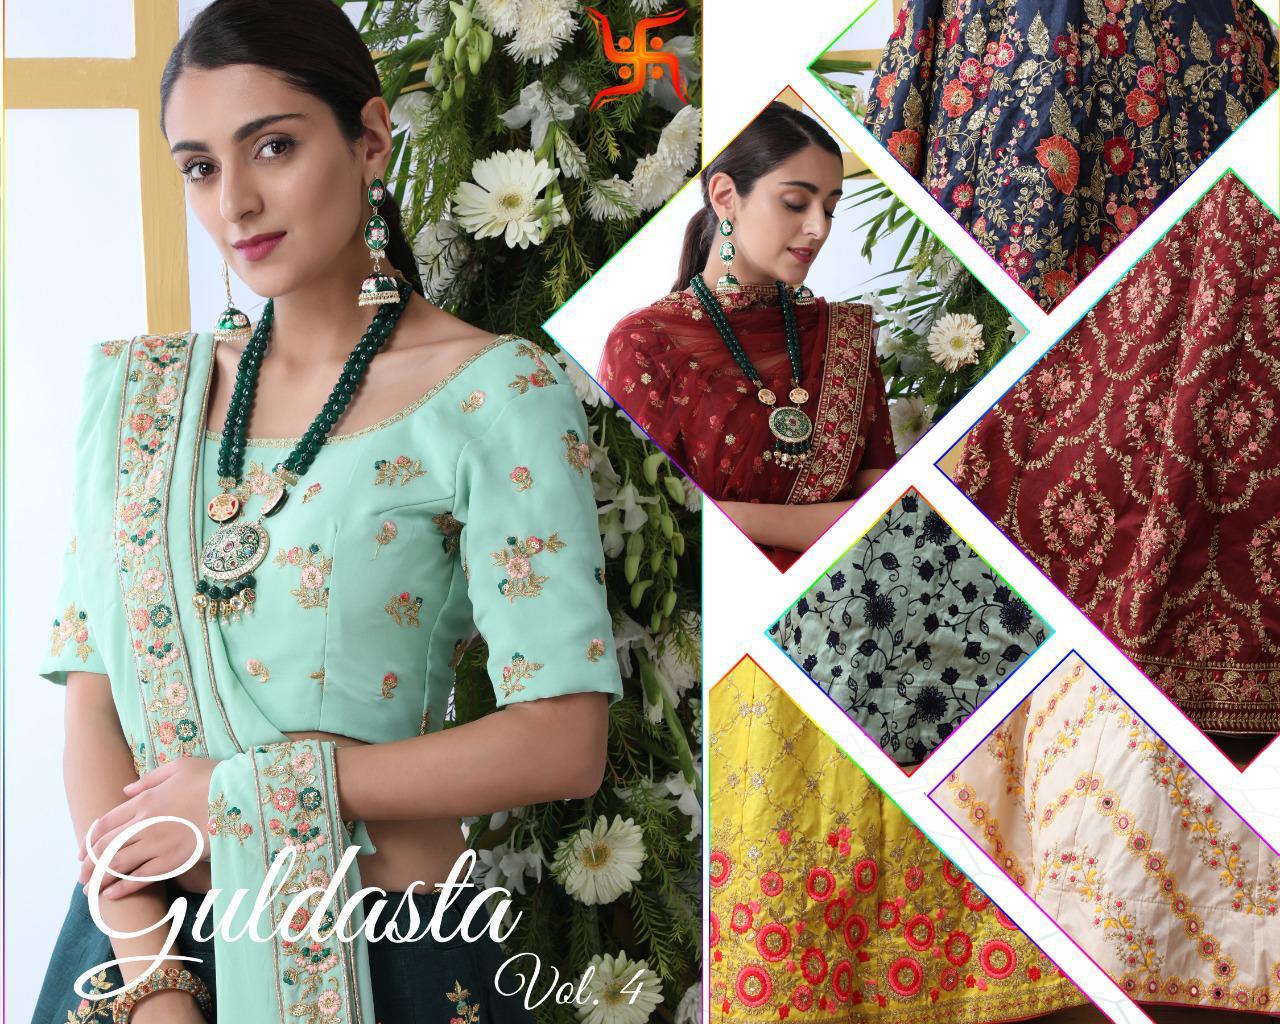 Shubhkala Guldasta Vol 4 Silk Wedding Party Wear Semi Stitch Lehenga Collection